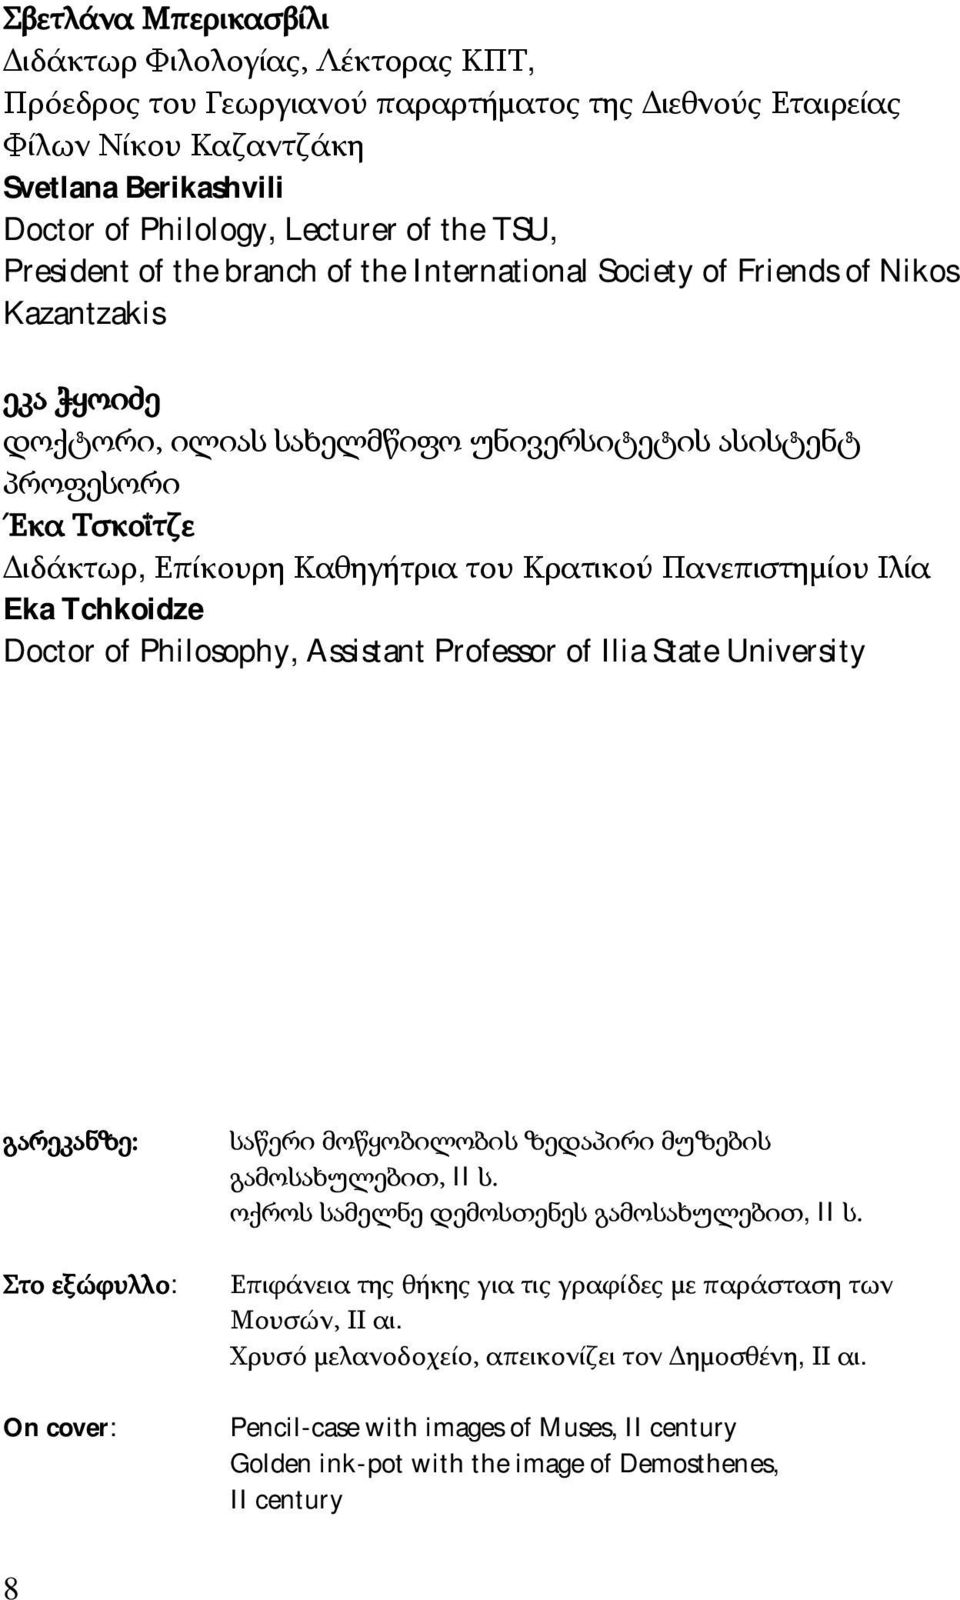 Καθηγήτρια του Κρατικού Πανεπιστημίου Ιλία Eka Tchkoidze Doctor of Philosophy, Assistant Professor of Ilia State University გარეკანზე: Στο εξώφυλλο: On cover: საწერი მოწყობილობის ზედაპირი მუზების